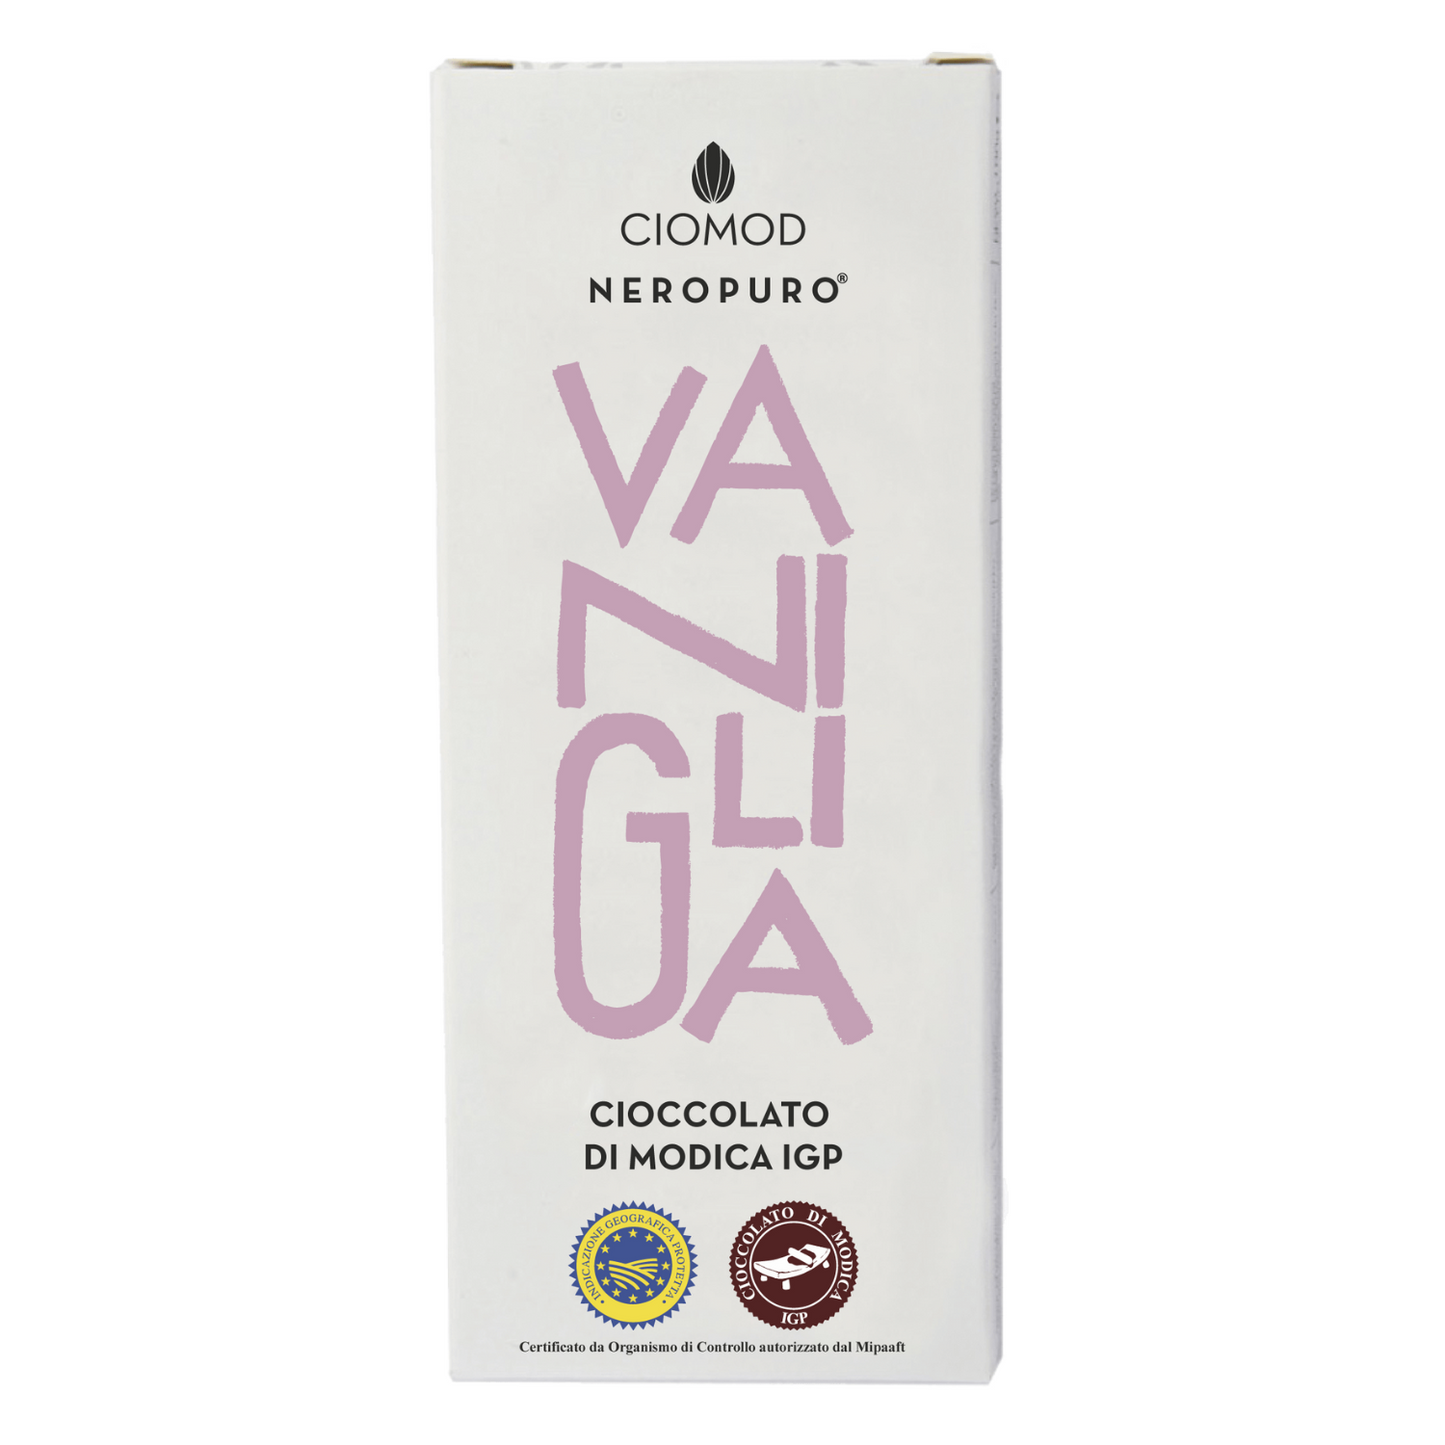 Cioccolato di Modica Igp Vaniglia - Ciomod